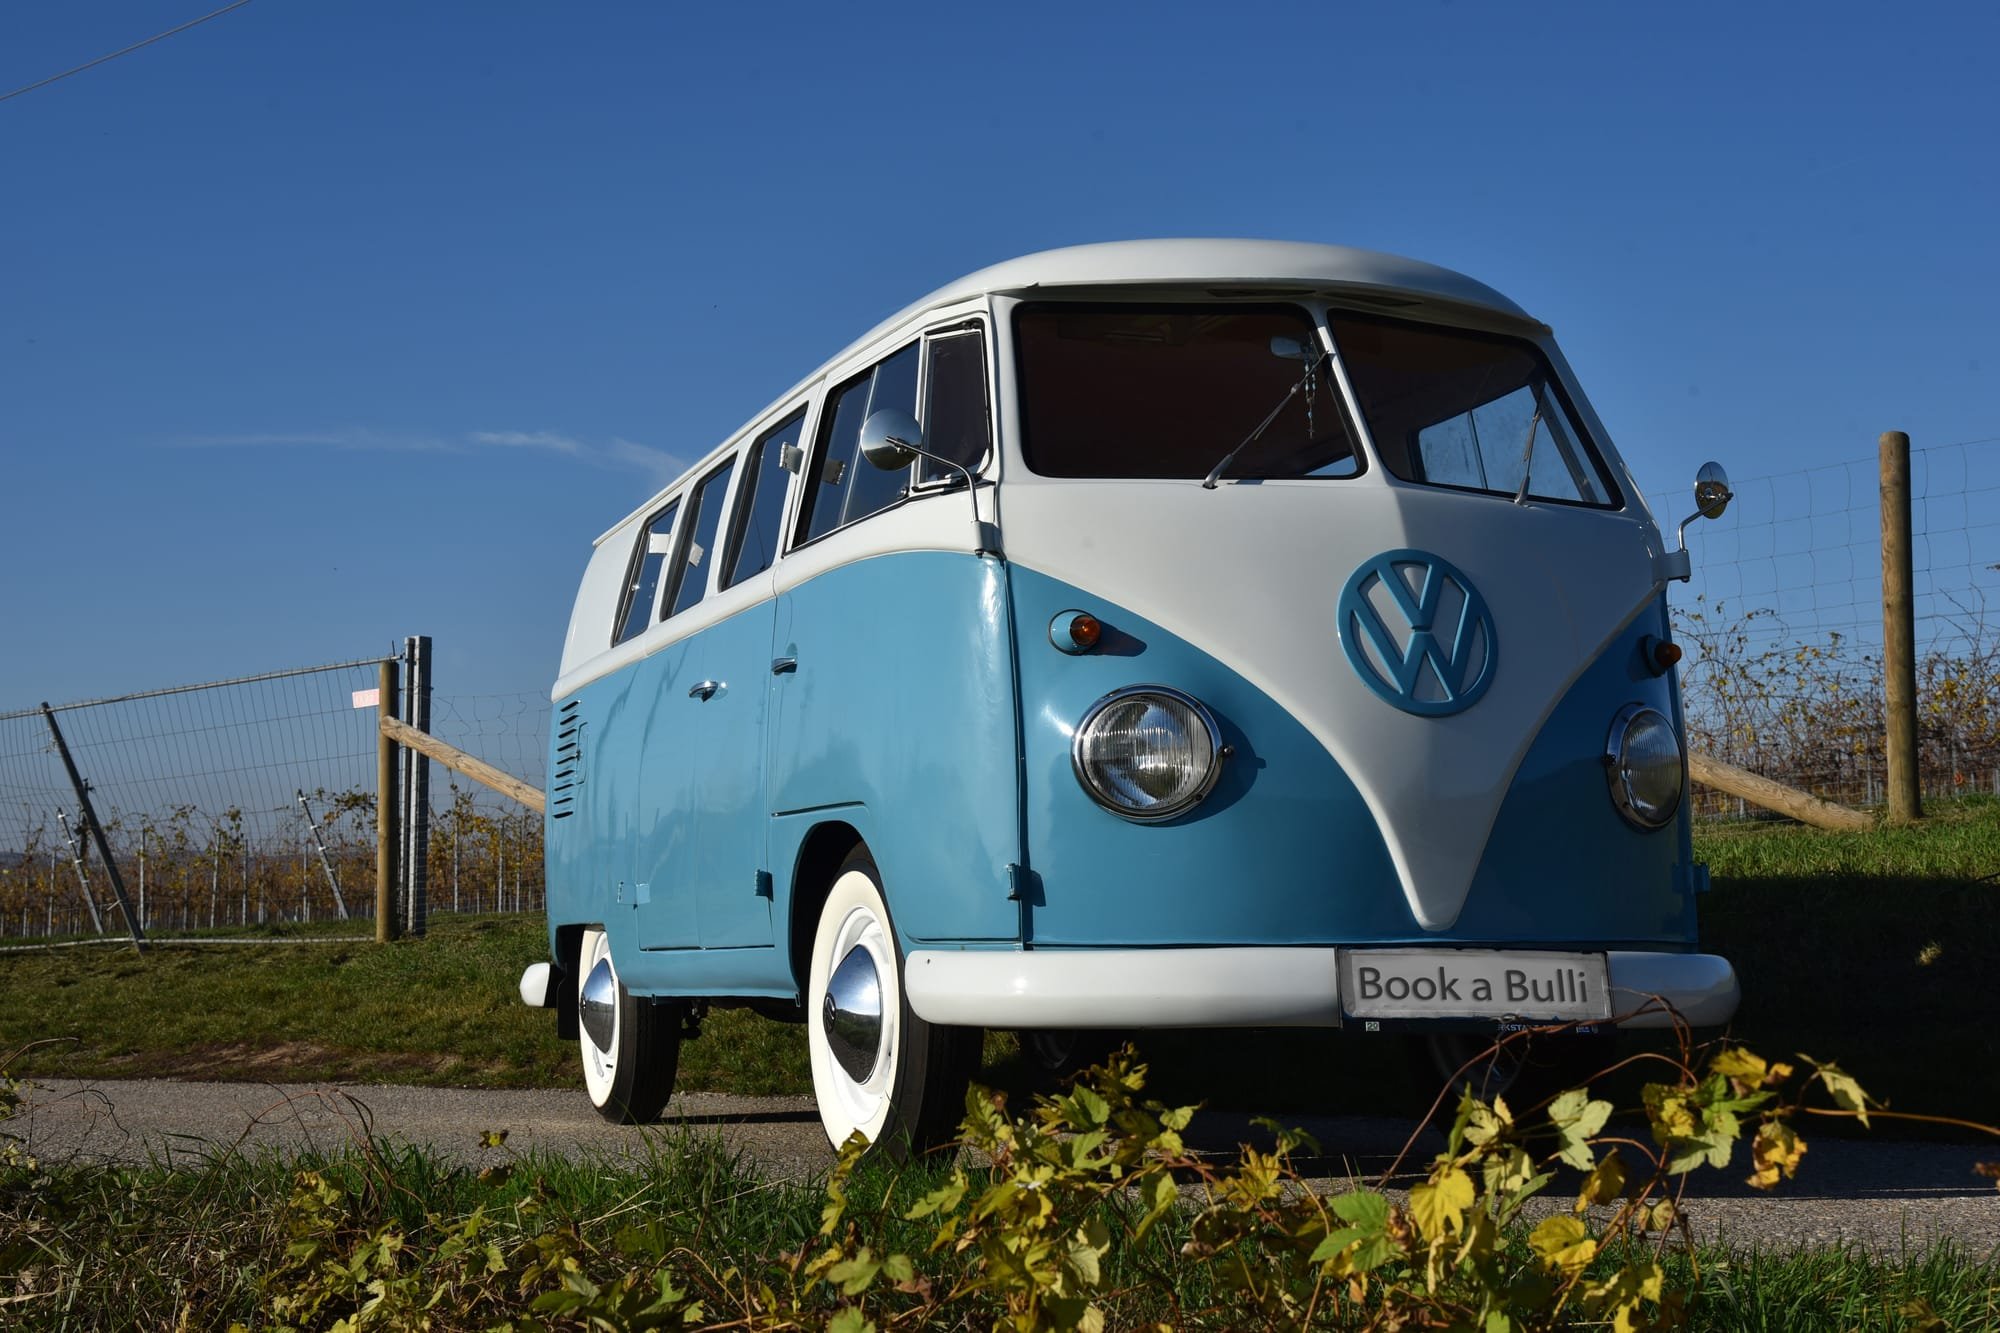 Coole Geschenkideen für VW Bulli Fans  Coole geschenkideen, Volkswagen  bus, Volkswagen